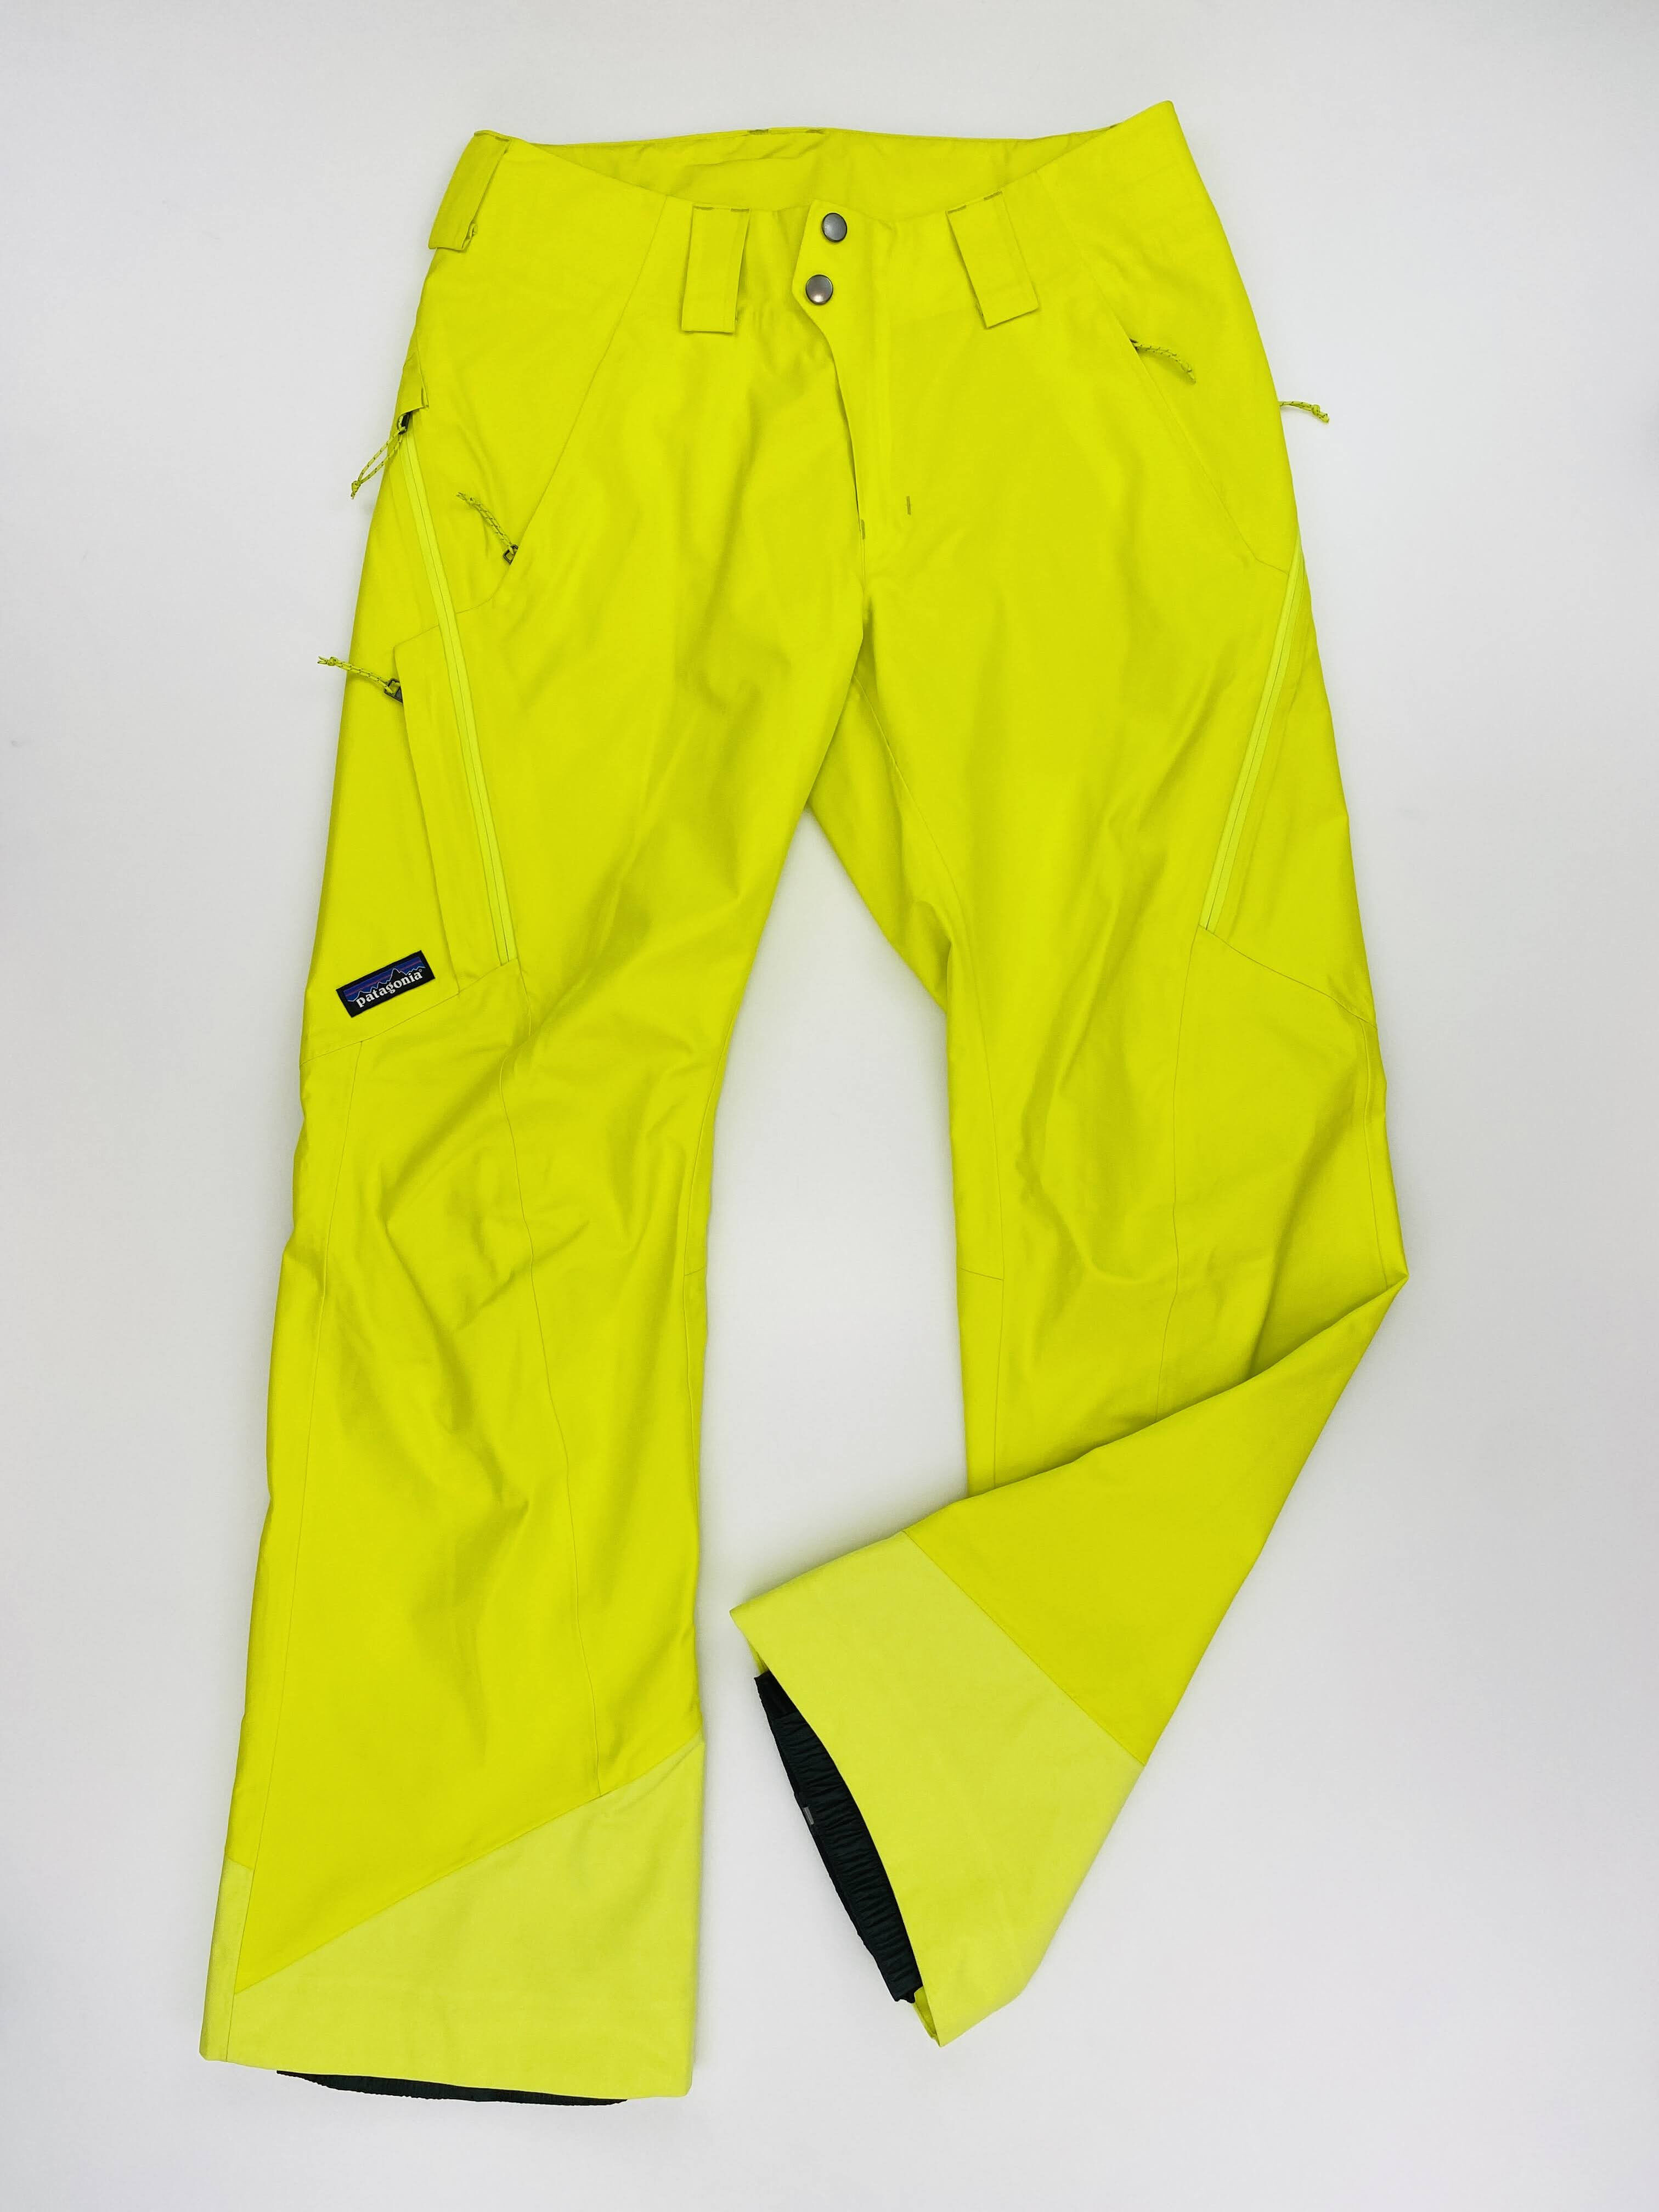 Patagonia W's Powder Bowl Pants - Reg - Second Hand Dámské lyžařské kalhoty - Žlutá - S | Hardloop